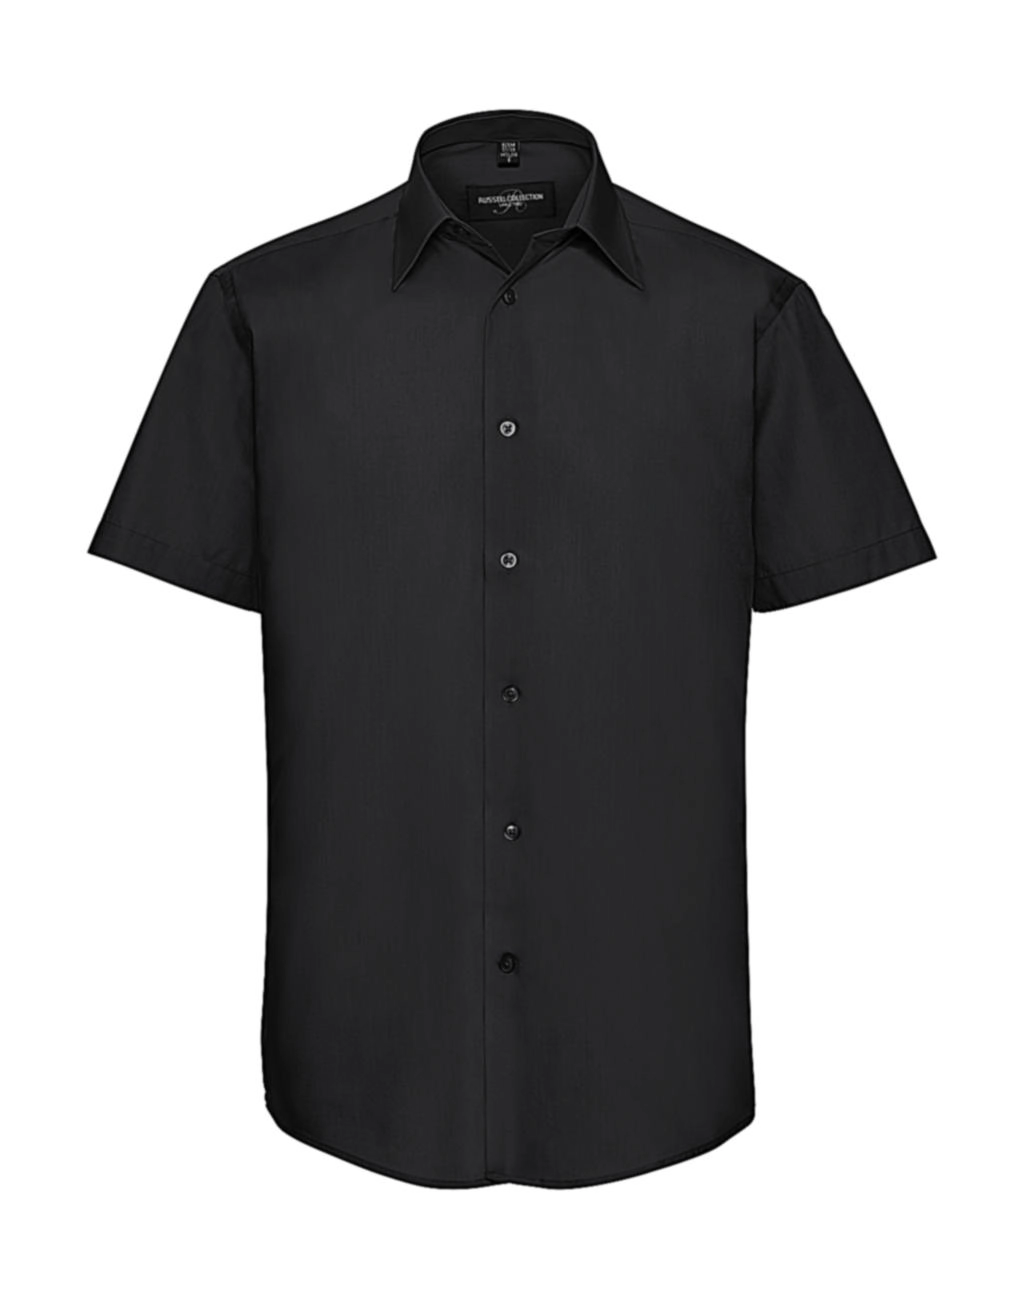 Tailored Poplin Shirt zum Besticken und Bedrucken in der Farbe Black mit Ihren Logo, Schriftzug oder Motiv.